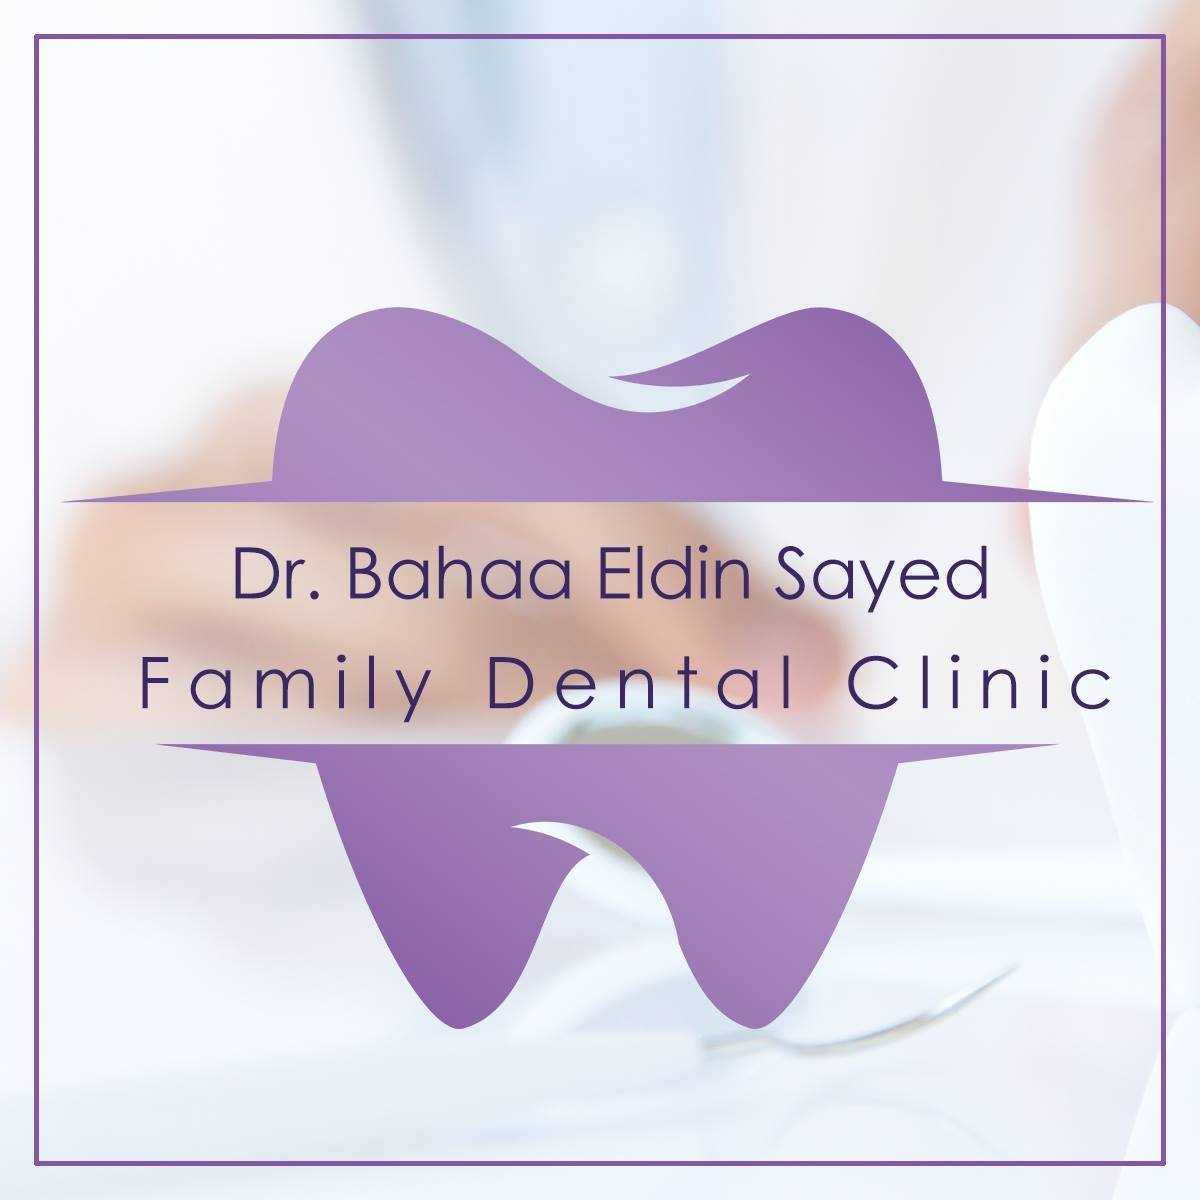 Doctor Bahaa eldin Sayed